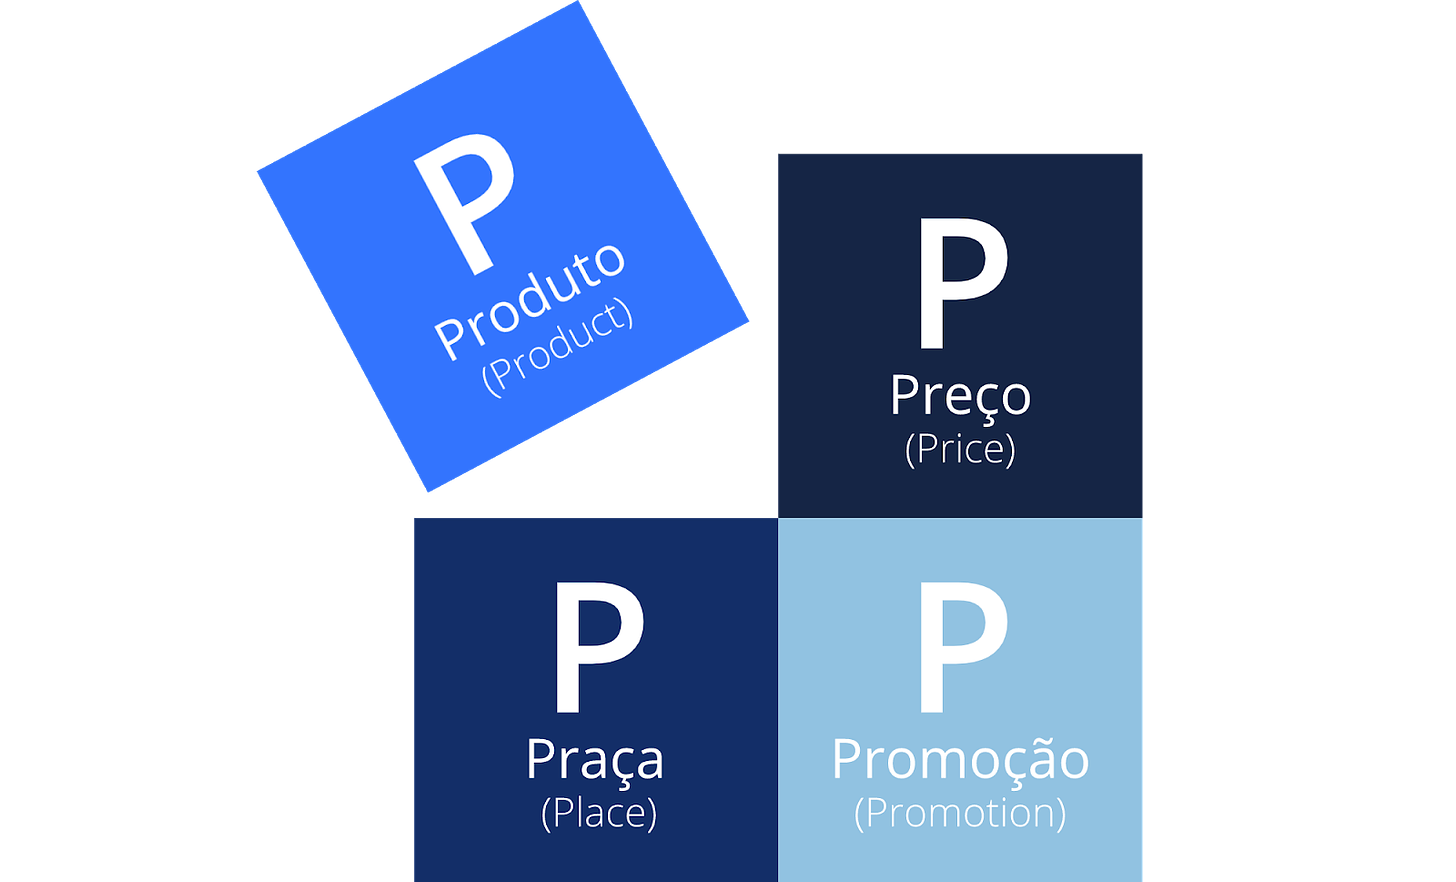 Imagem contém 4 quadrados. O primeiro, separado dos outros, diz: P de Produto (Product). O segundo diz: P de Preço (Price). O terceiro diz: P de Praça (Place). O quarto diz: P de Promoção (Promotion).